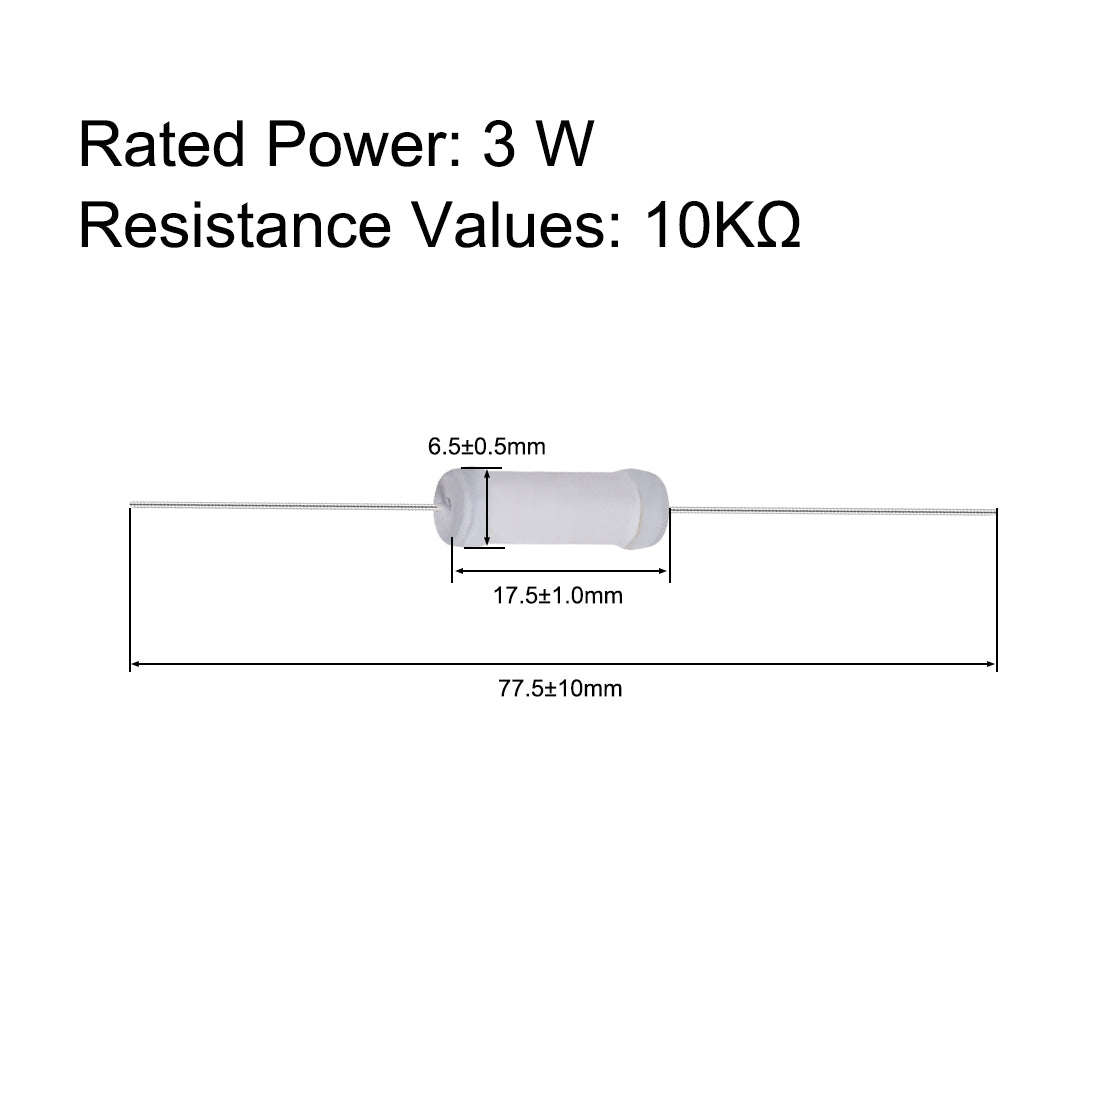 uxcell Uxcell 40pcs 3W 3 Watt Metal Oxide Film Resistor Lead 10K Ohm ±5% Tolerance